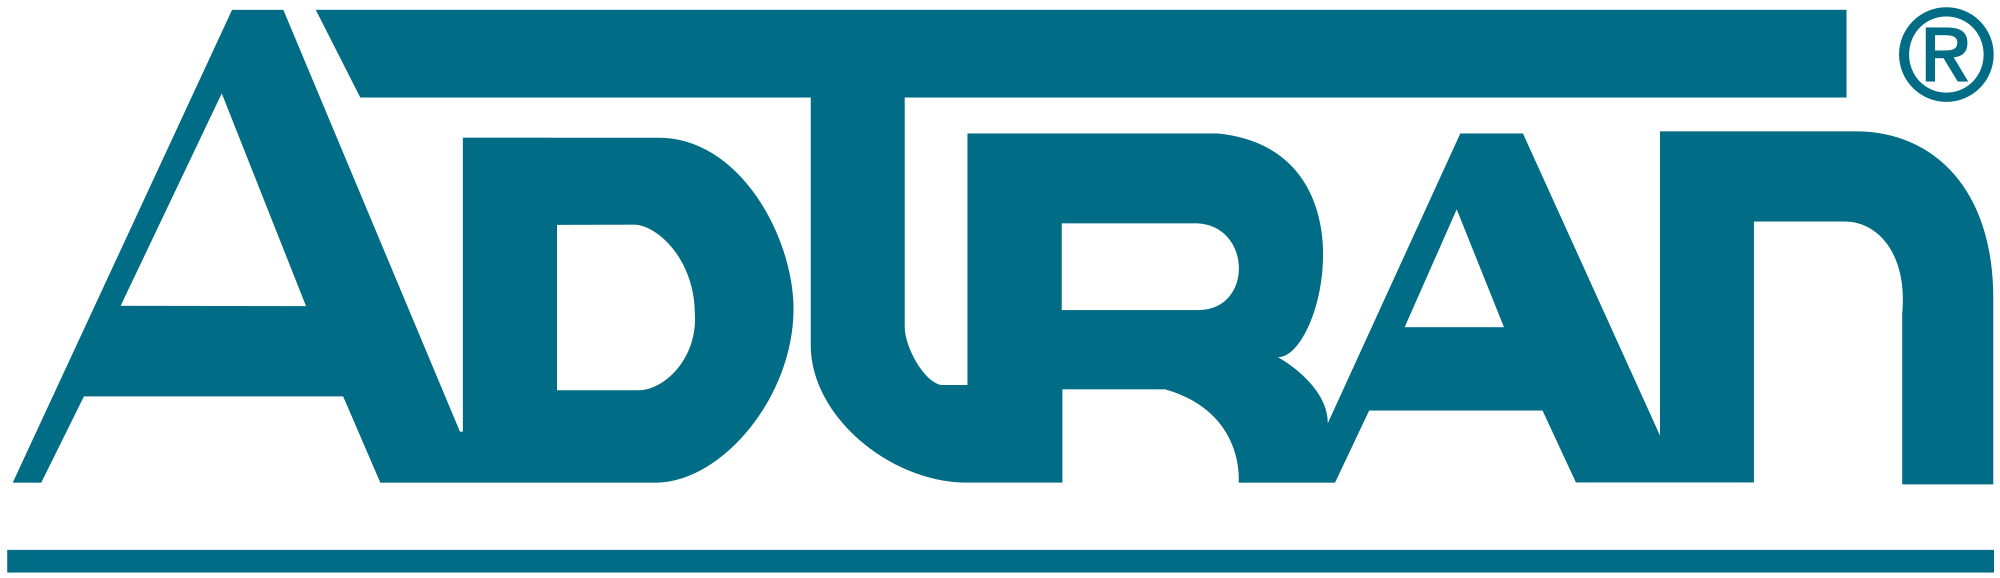 ADTRAN Brand Logo